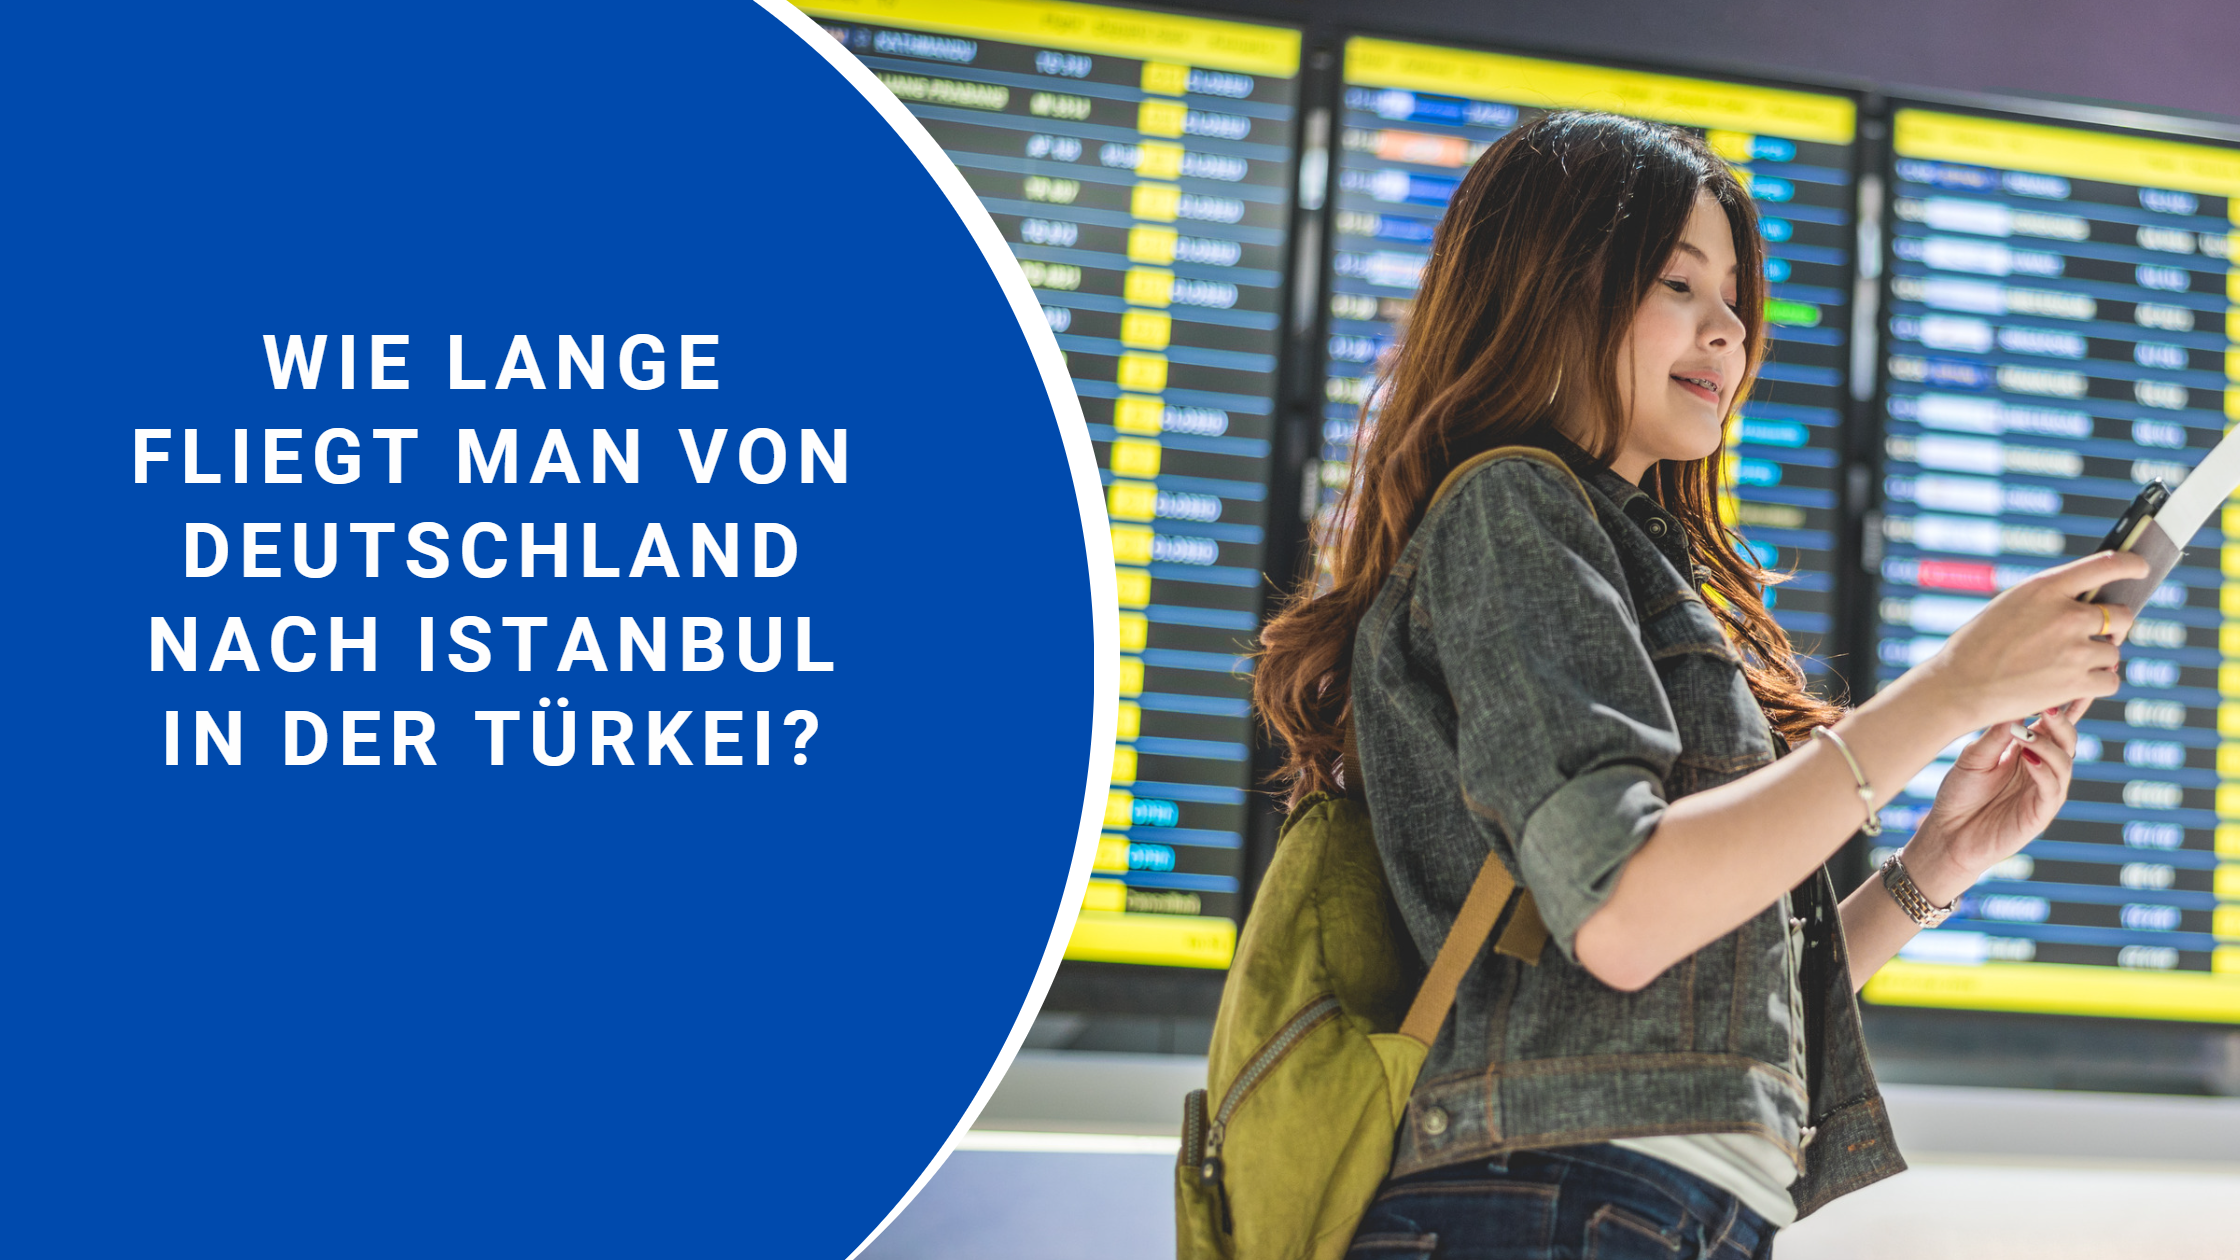 Wie lange fliegt man von Deutschland nach Istanbul in der Türkei?